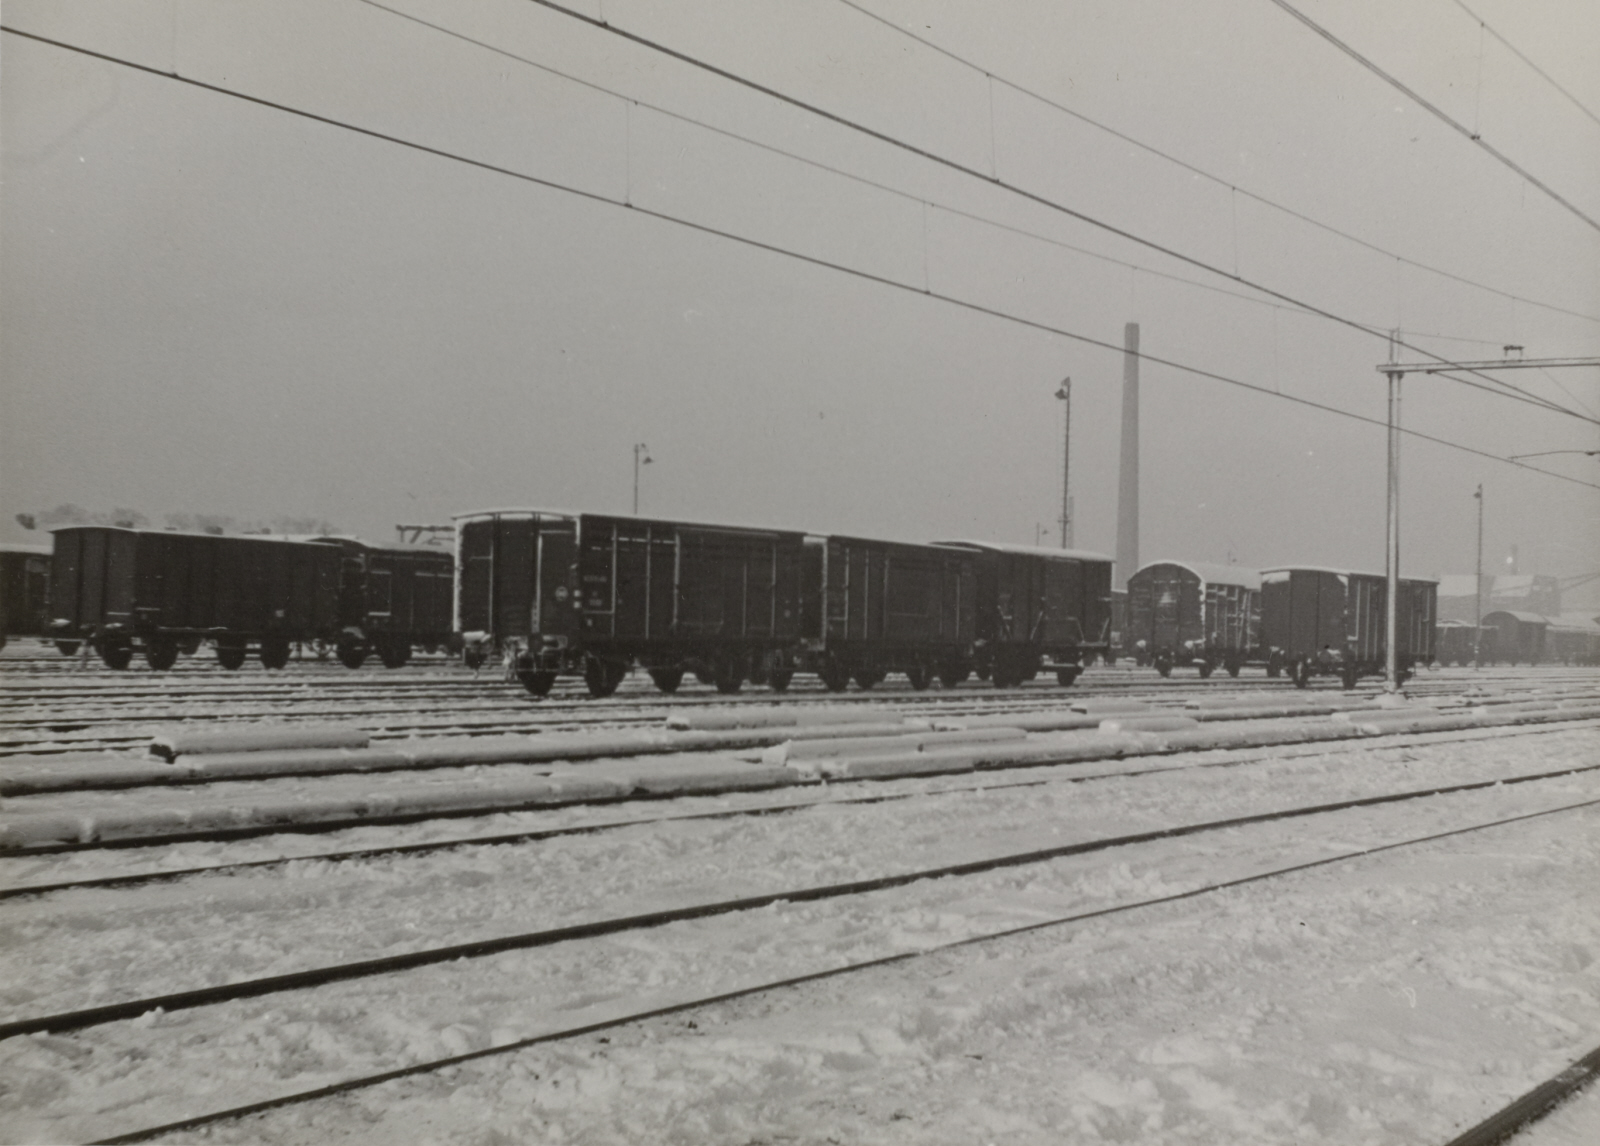 Emplacement in de sneeuw met gesloten goederenwagens